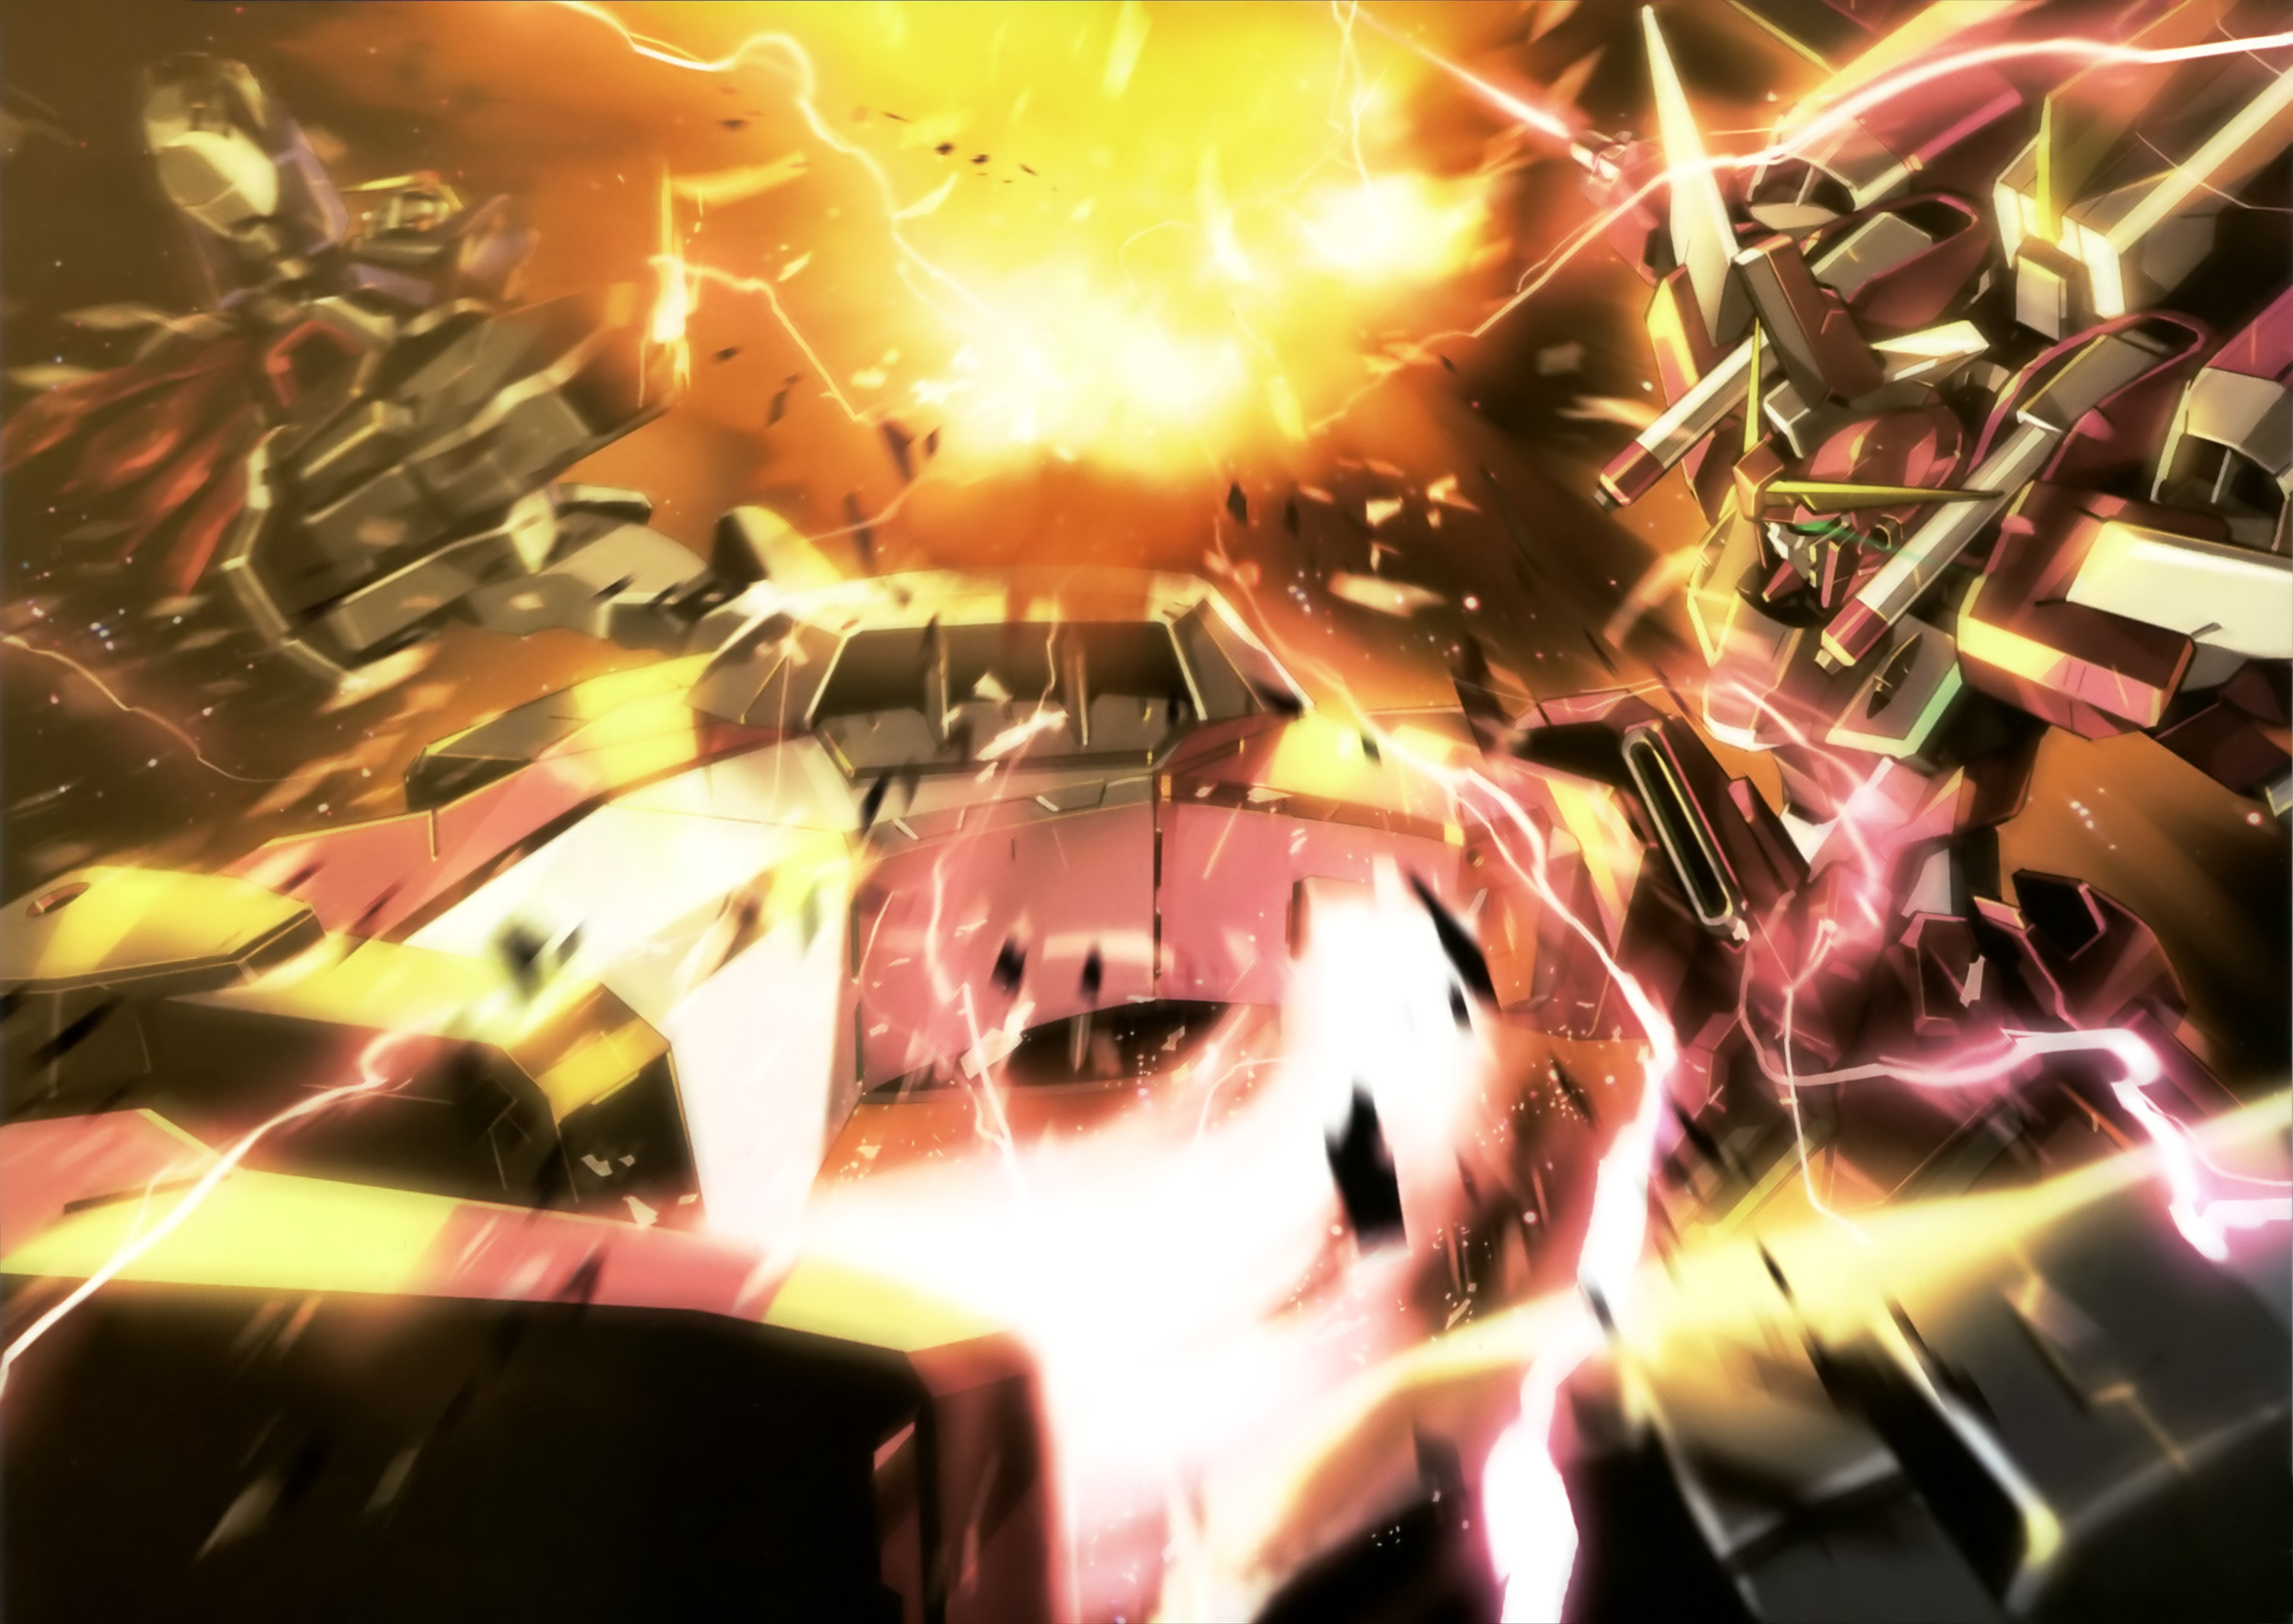 Скачать обои бесплатно Аниме, Гандам, Мобильный Костюм Gundam Seed Destiny картинка на рабочий стол ПК